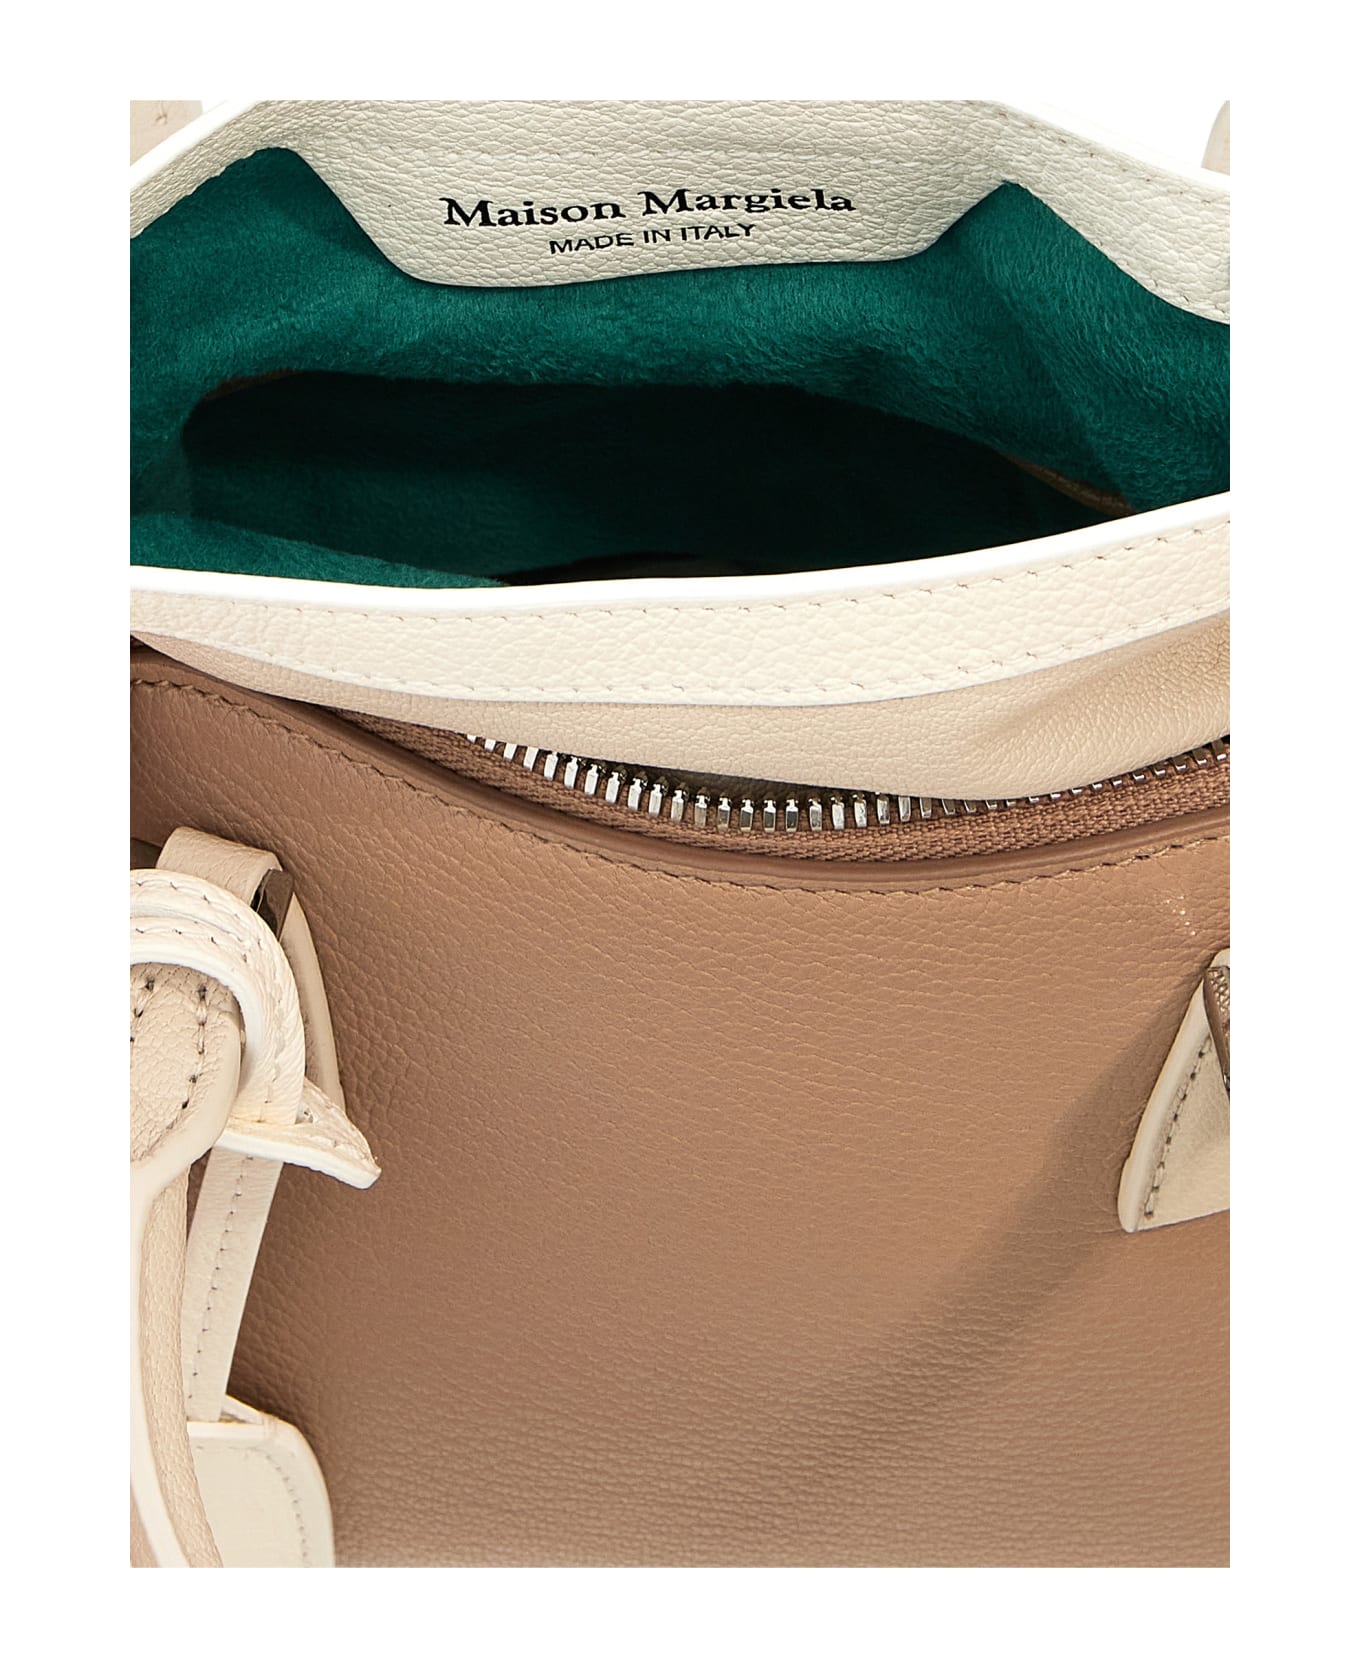 Maison Margiela 5ac Logo Patch Top Handle Bag - Beige